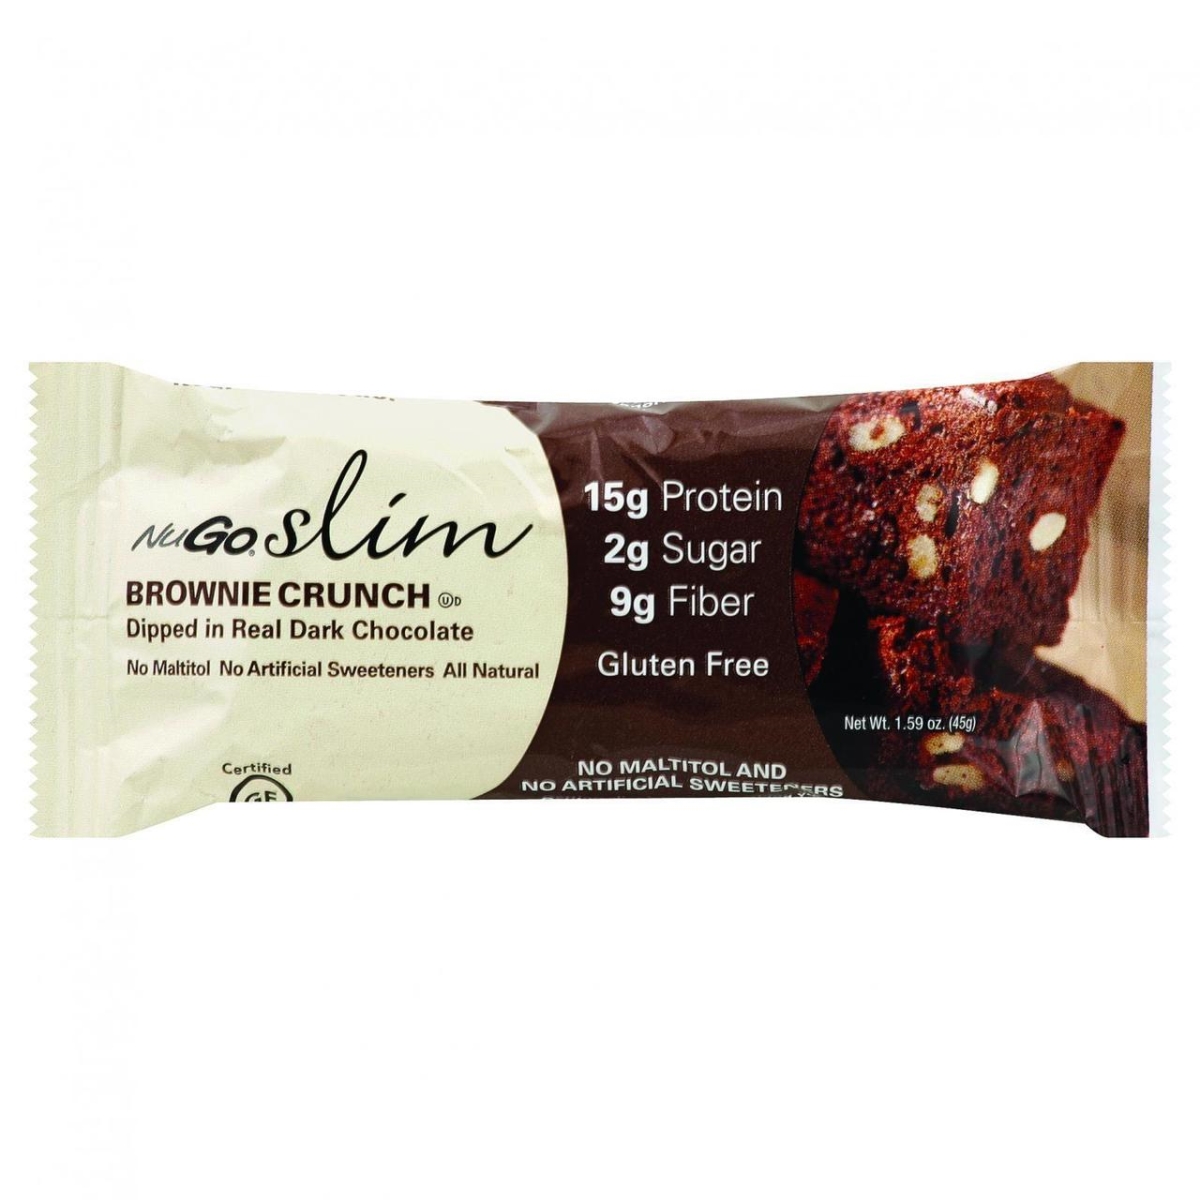 Hg1063031 1.59 Oz Slim Brownie Crunch Bar - Case Of 12